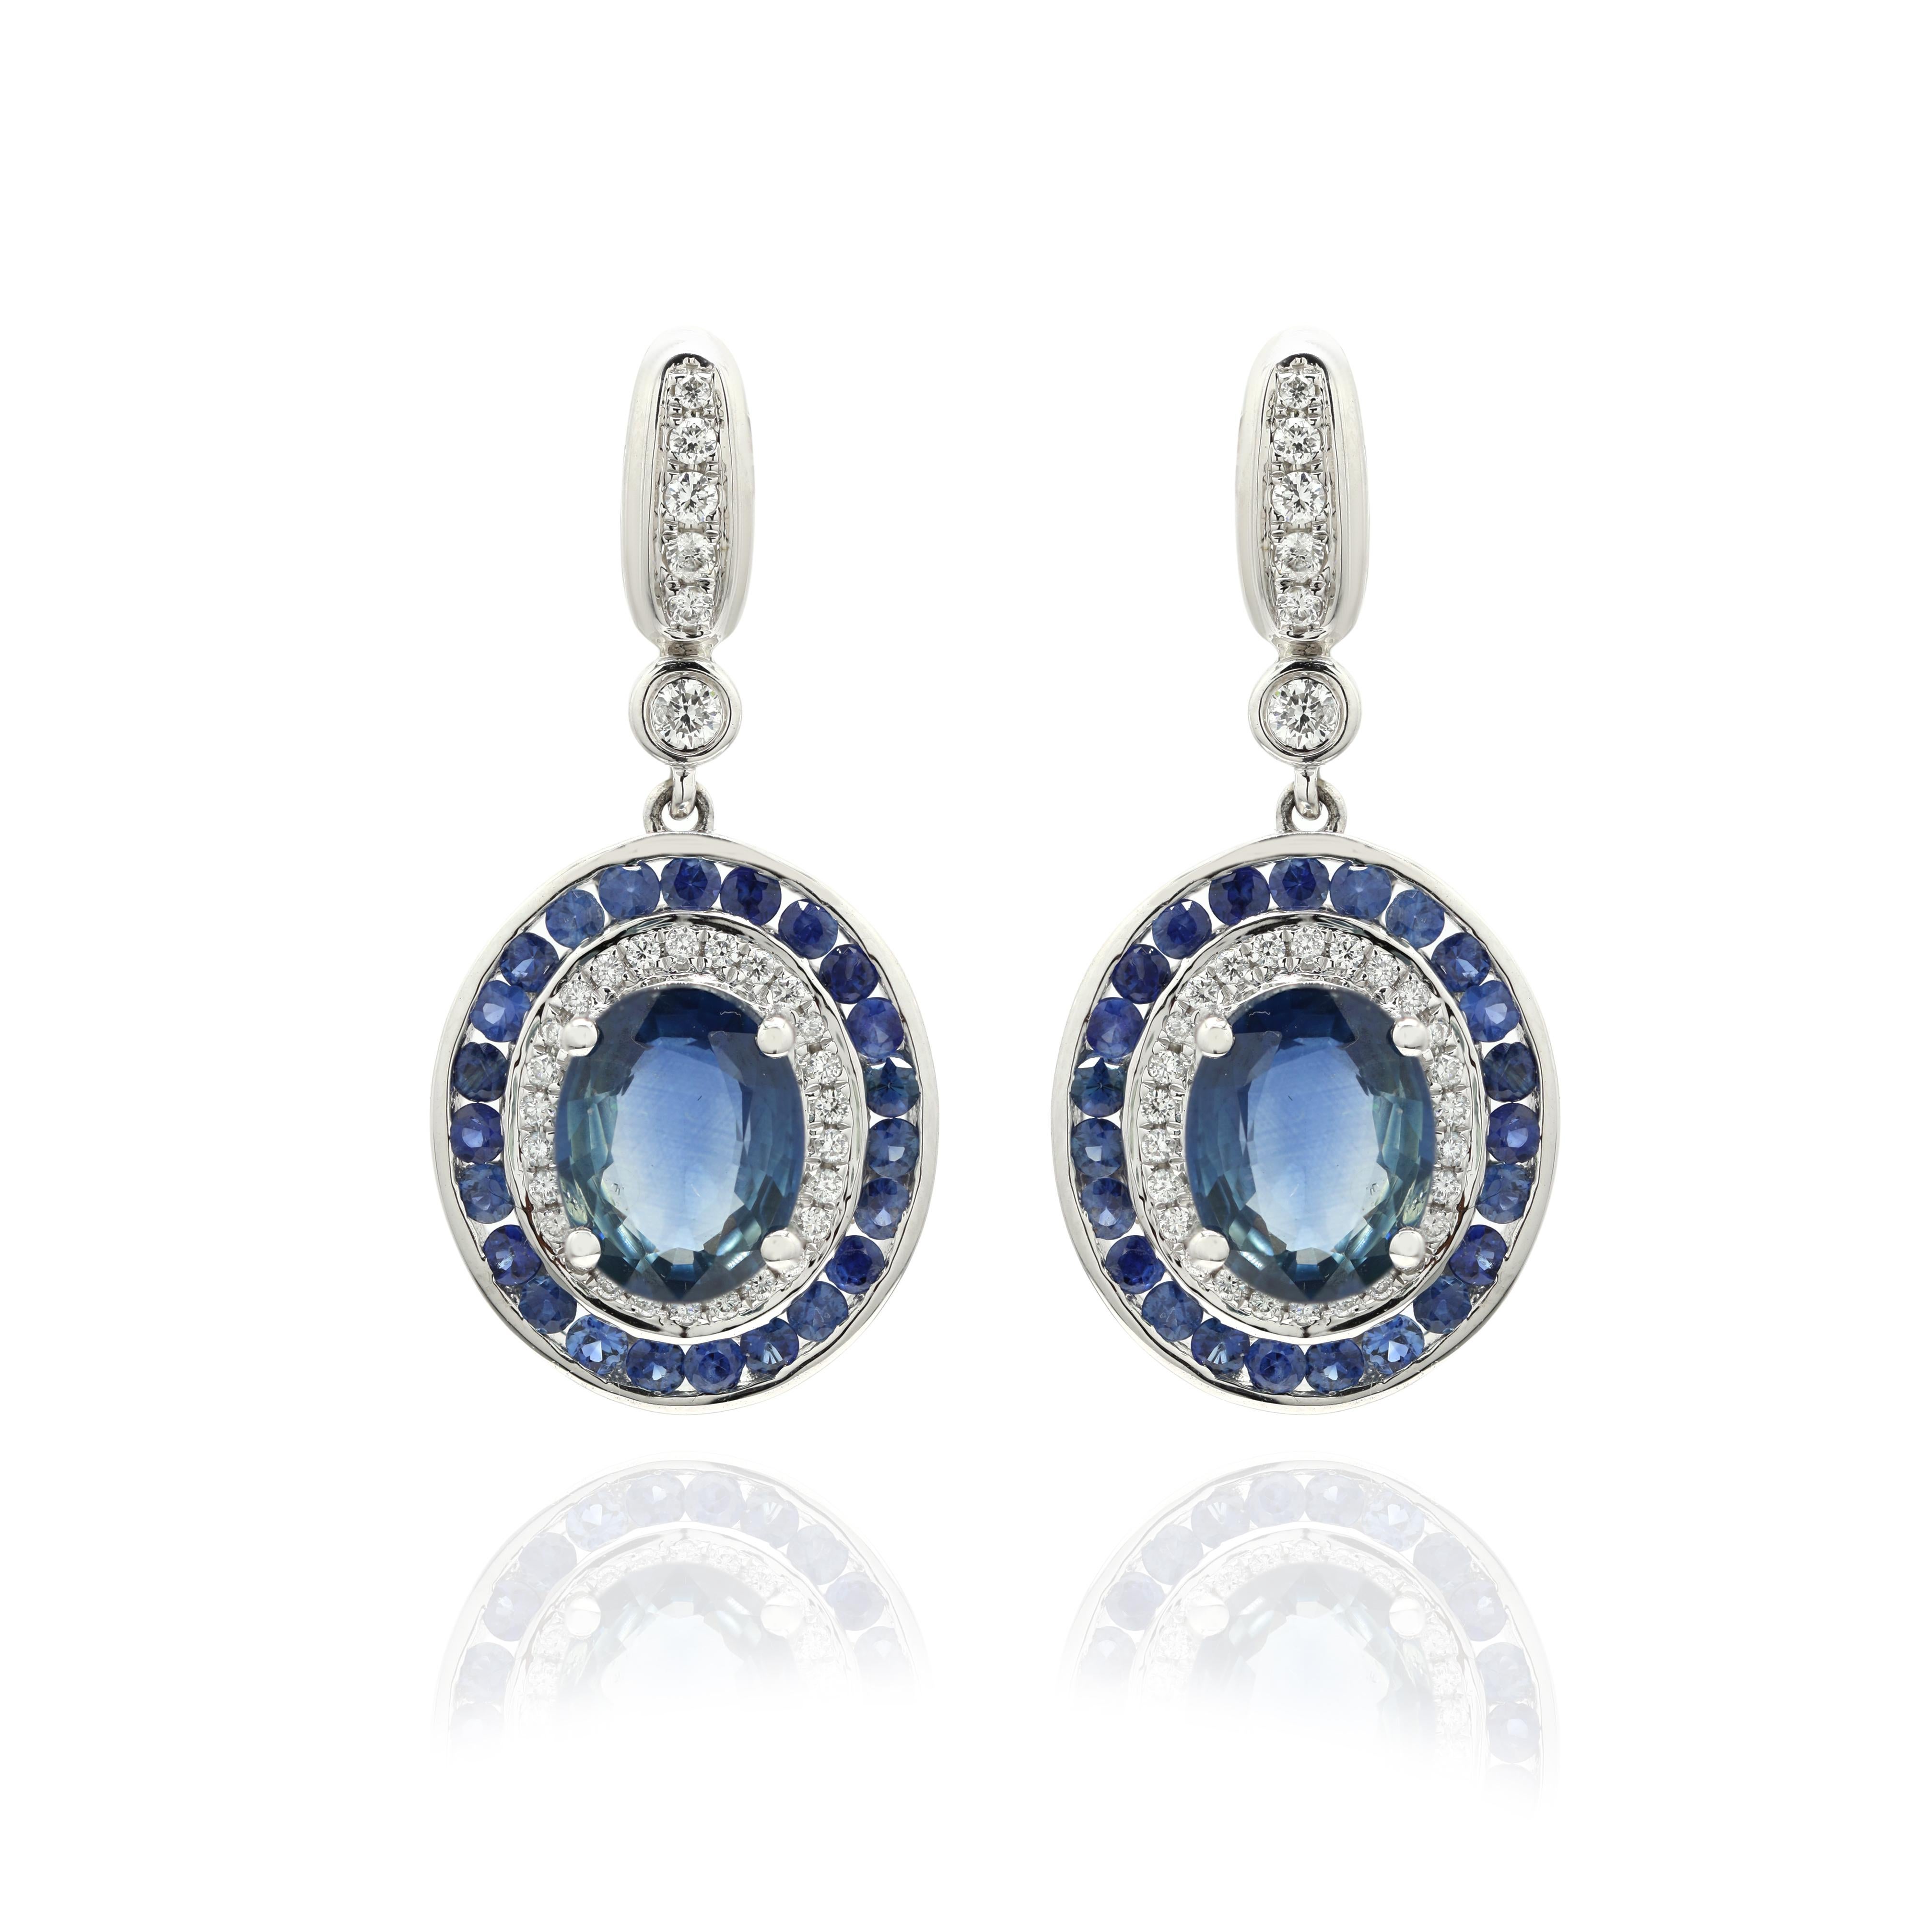 blue sapphire wedding earrings